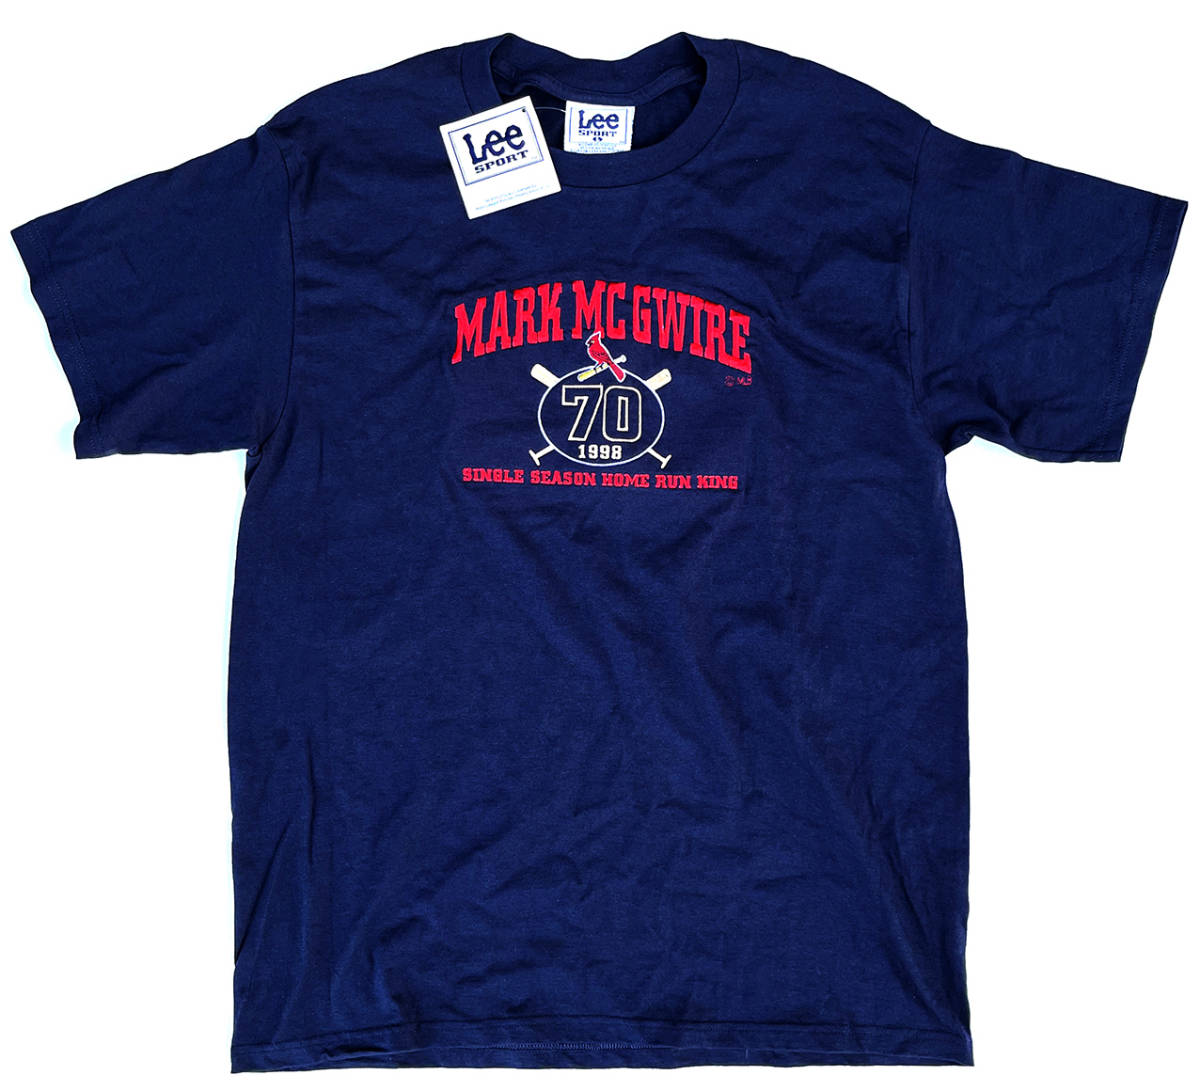 ★紙タグ付き 1998年 Lee SPORT MLB カージナルス マーク・マグワイア 刺繍 Tシャツ ネイビー Lサイズ 90s ビンテージ メジャーリーグ 野球_画像2